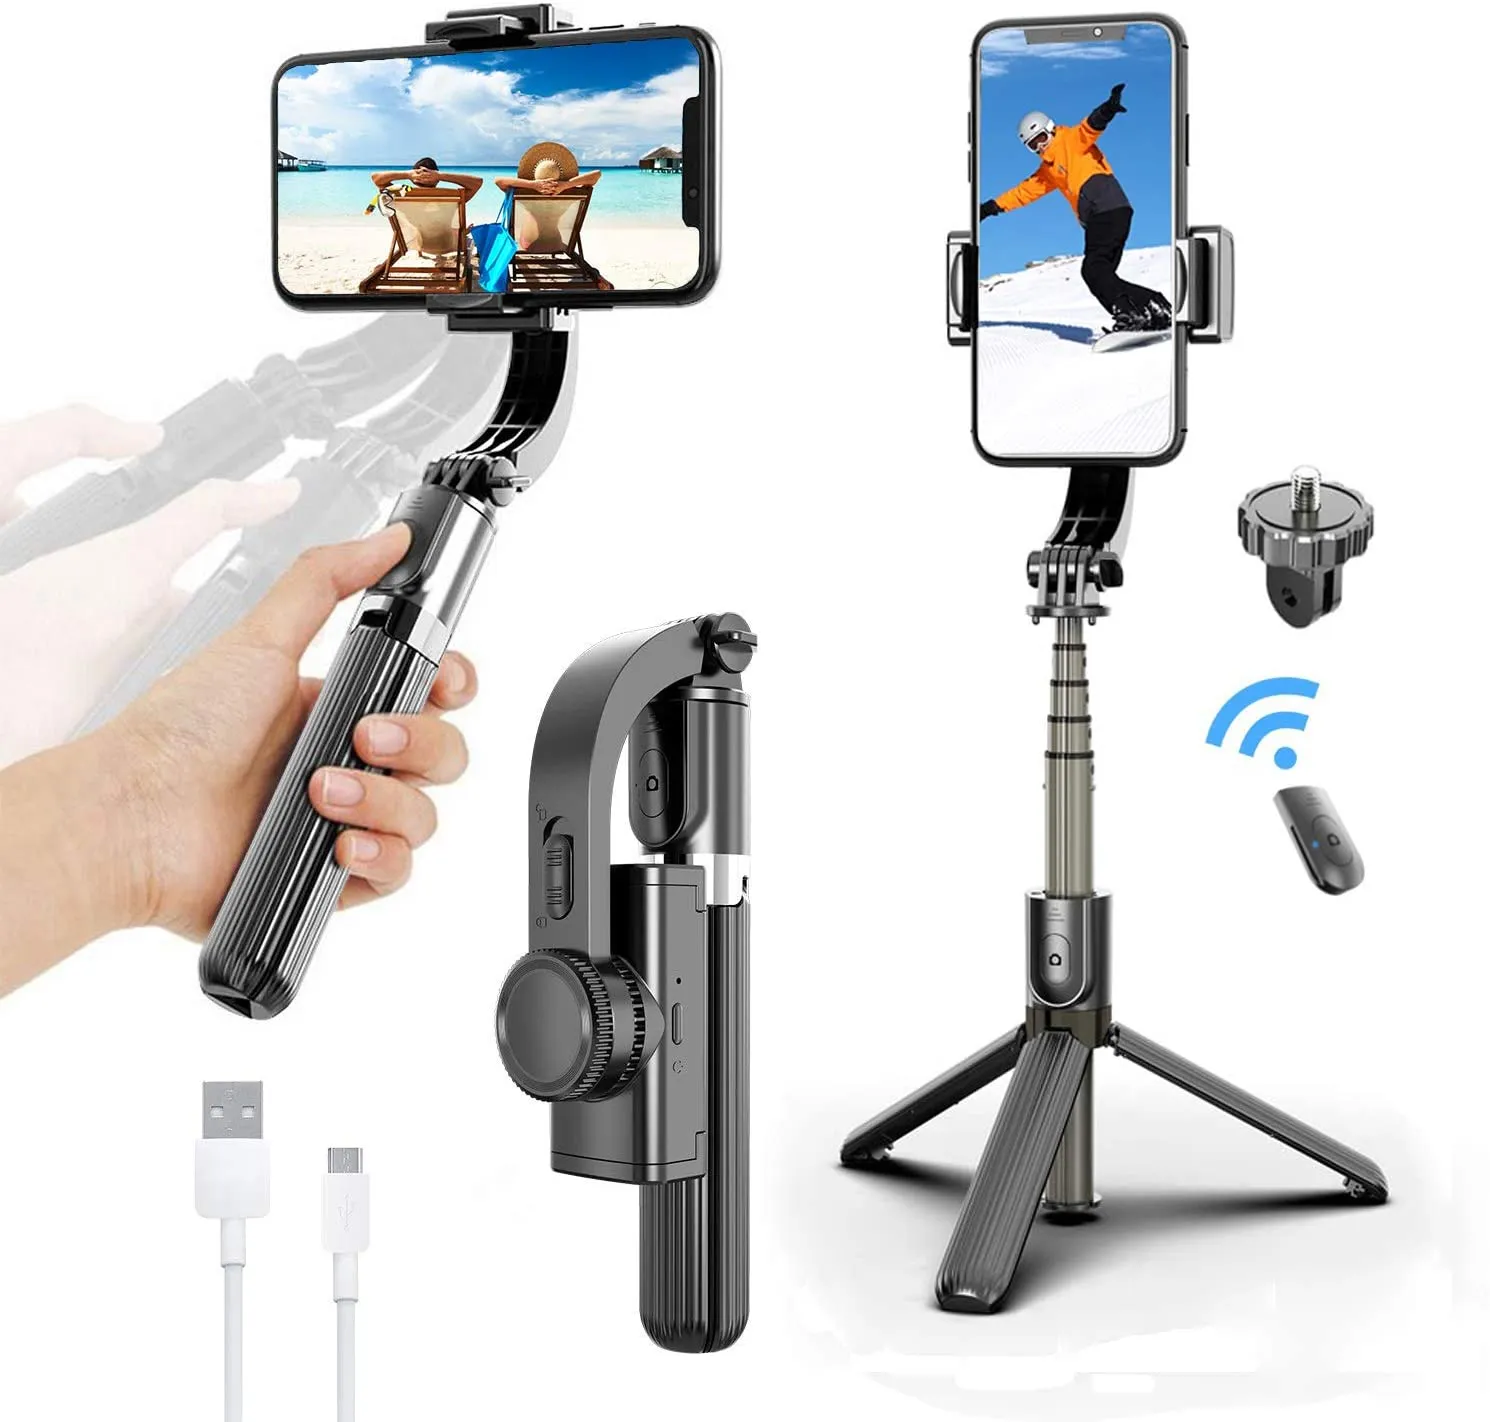 Gimbal-Stabilisator, Selfie-Stick-Stativ mit 360 ° -Drehung und drahtloser Bluetooth-Fernbedienung, tragbarer Telefonhalter, automatische Balance